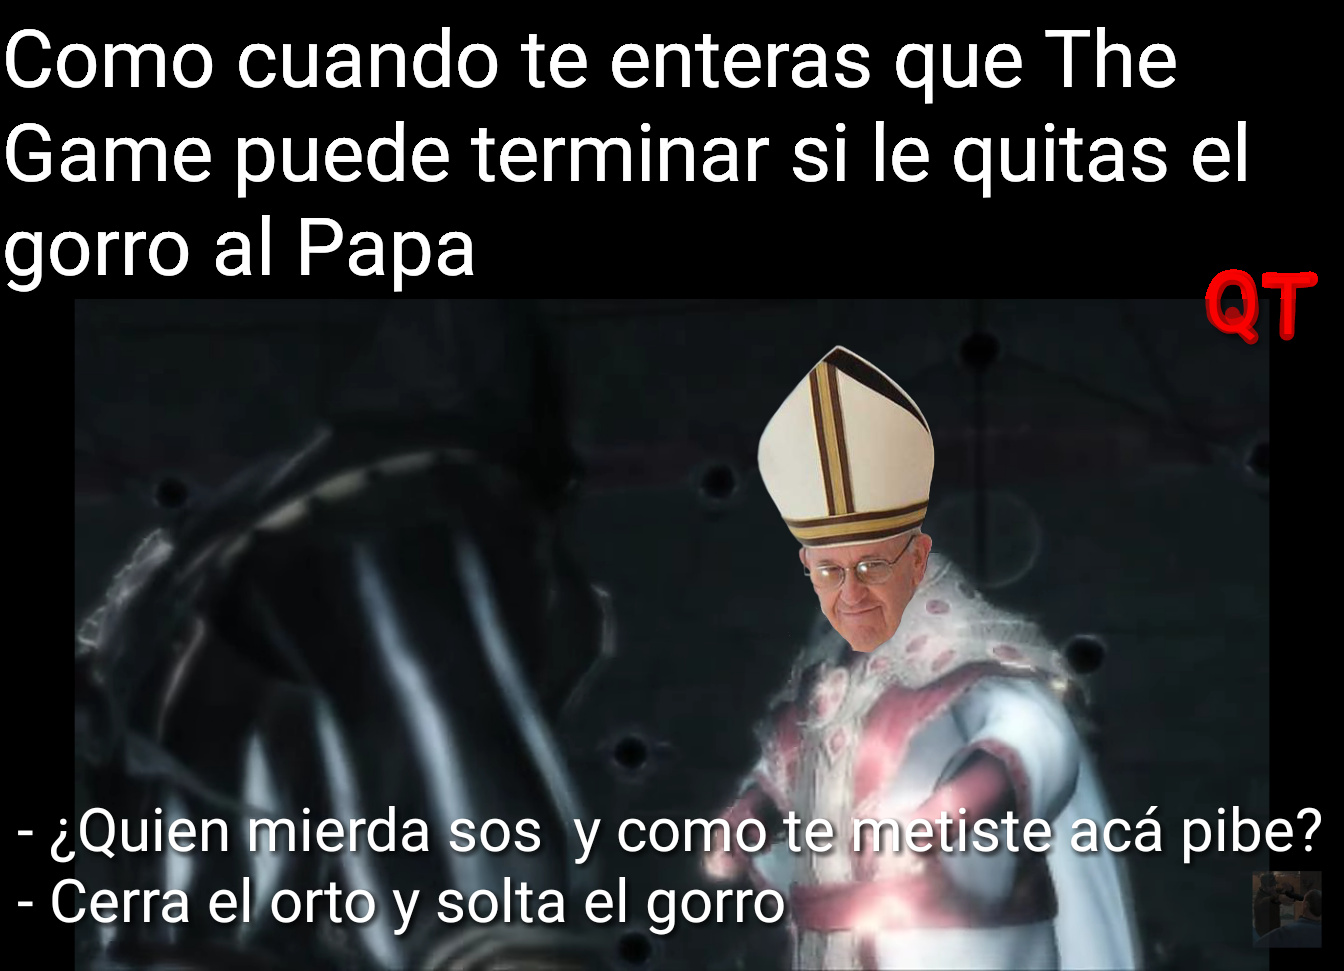 Al vaticano, suban al mememovil